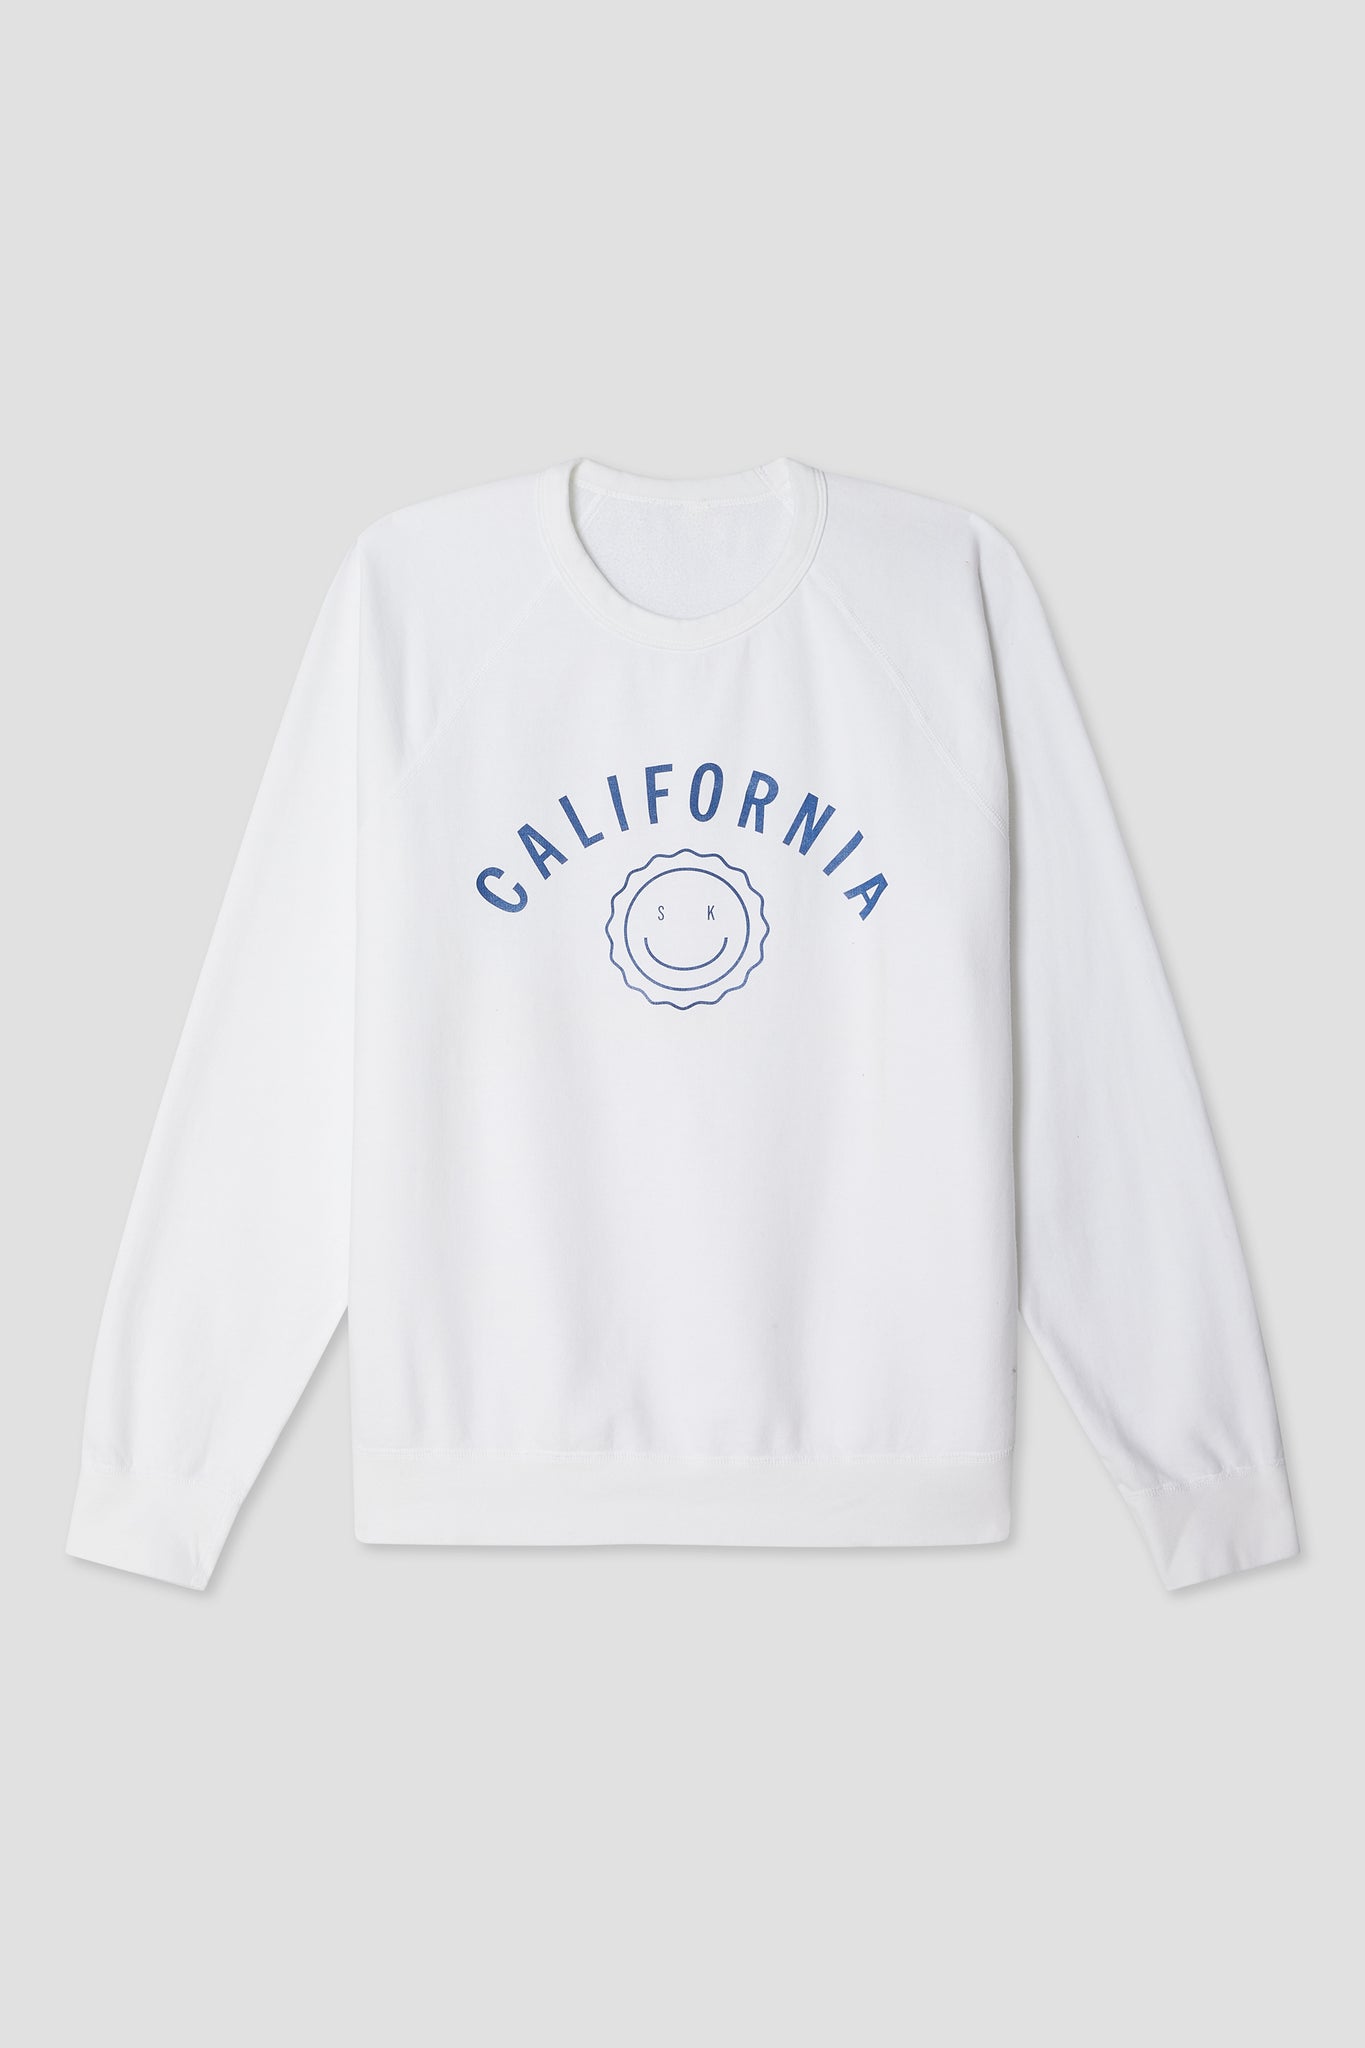 California Optimist Sweatshirt